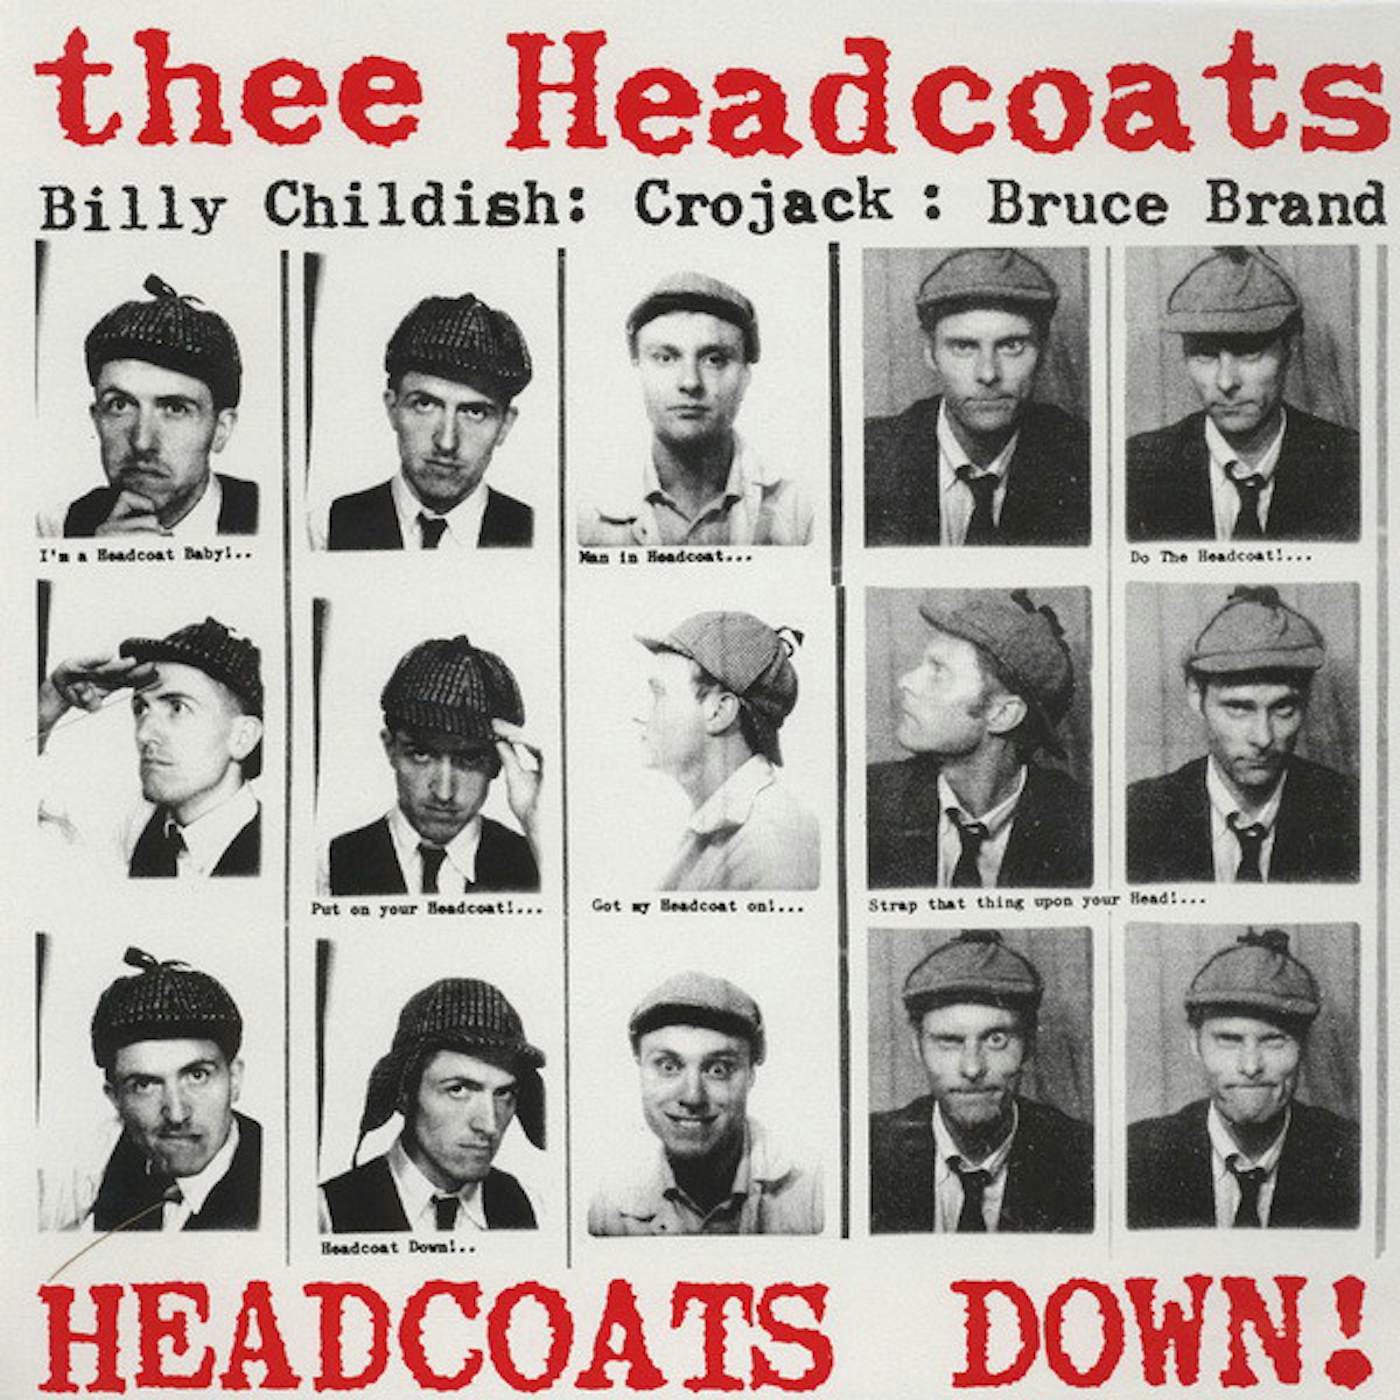 Thee Headcoats Headcoats Down Vinyl Record